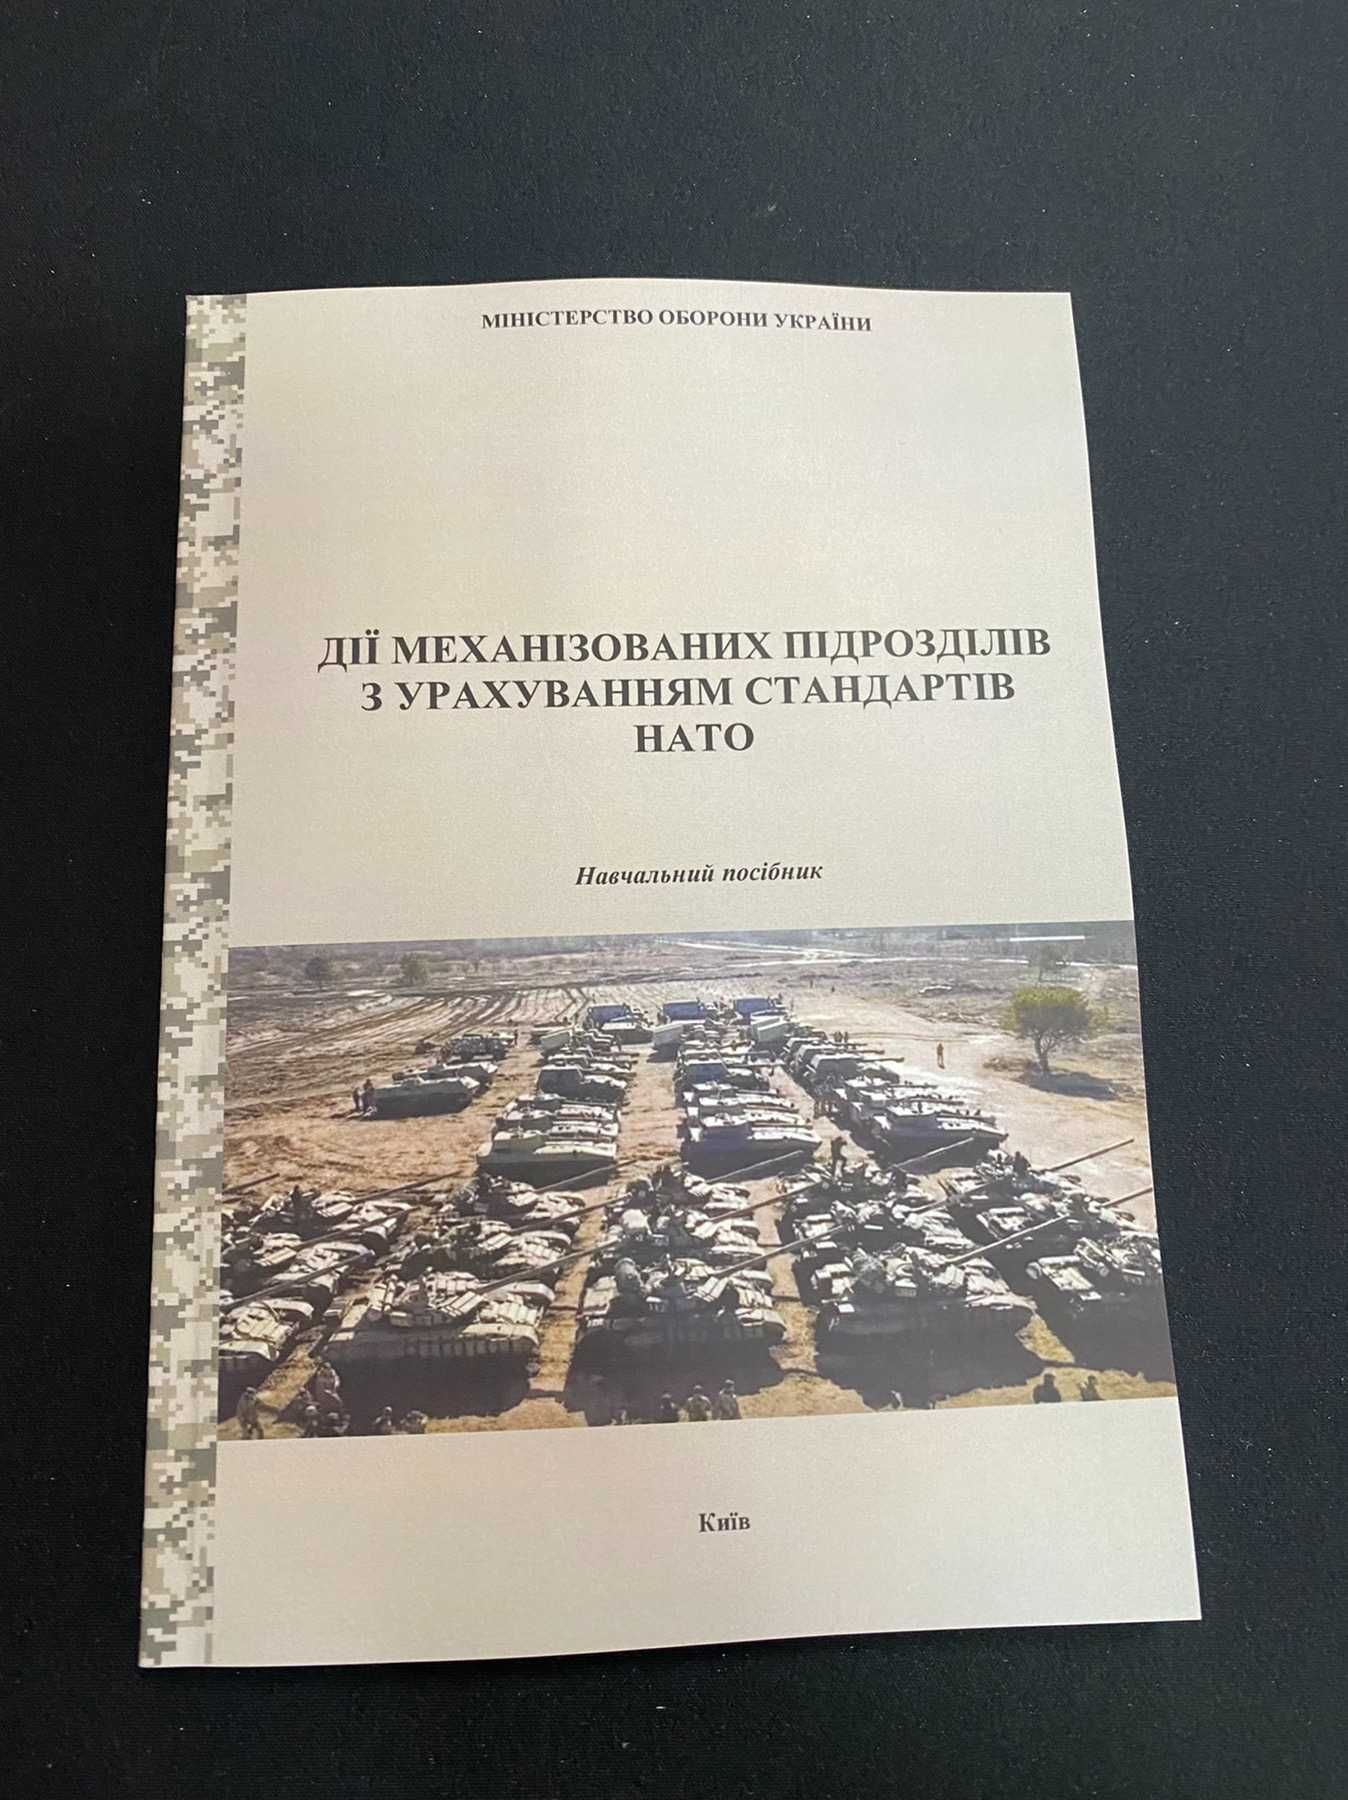 Дії механізованих підрозділів з урахуванням стандартів НАТО книга.